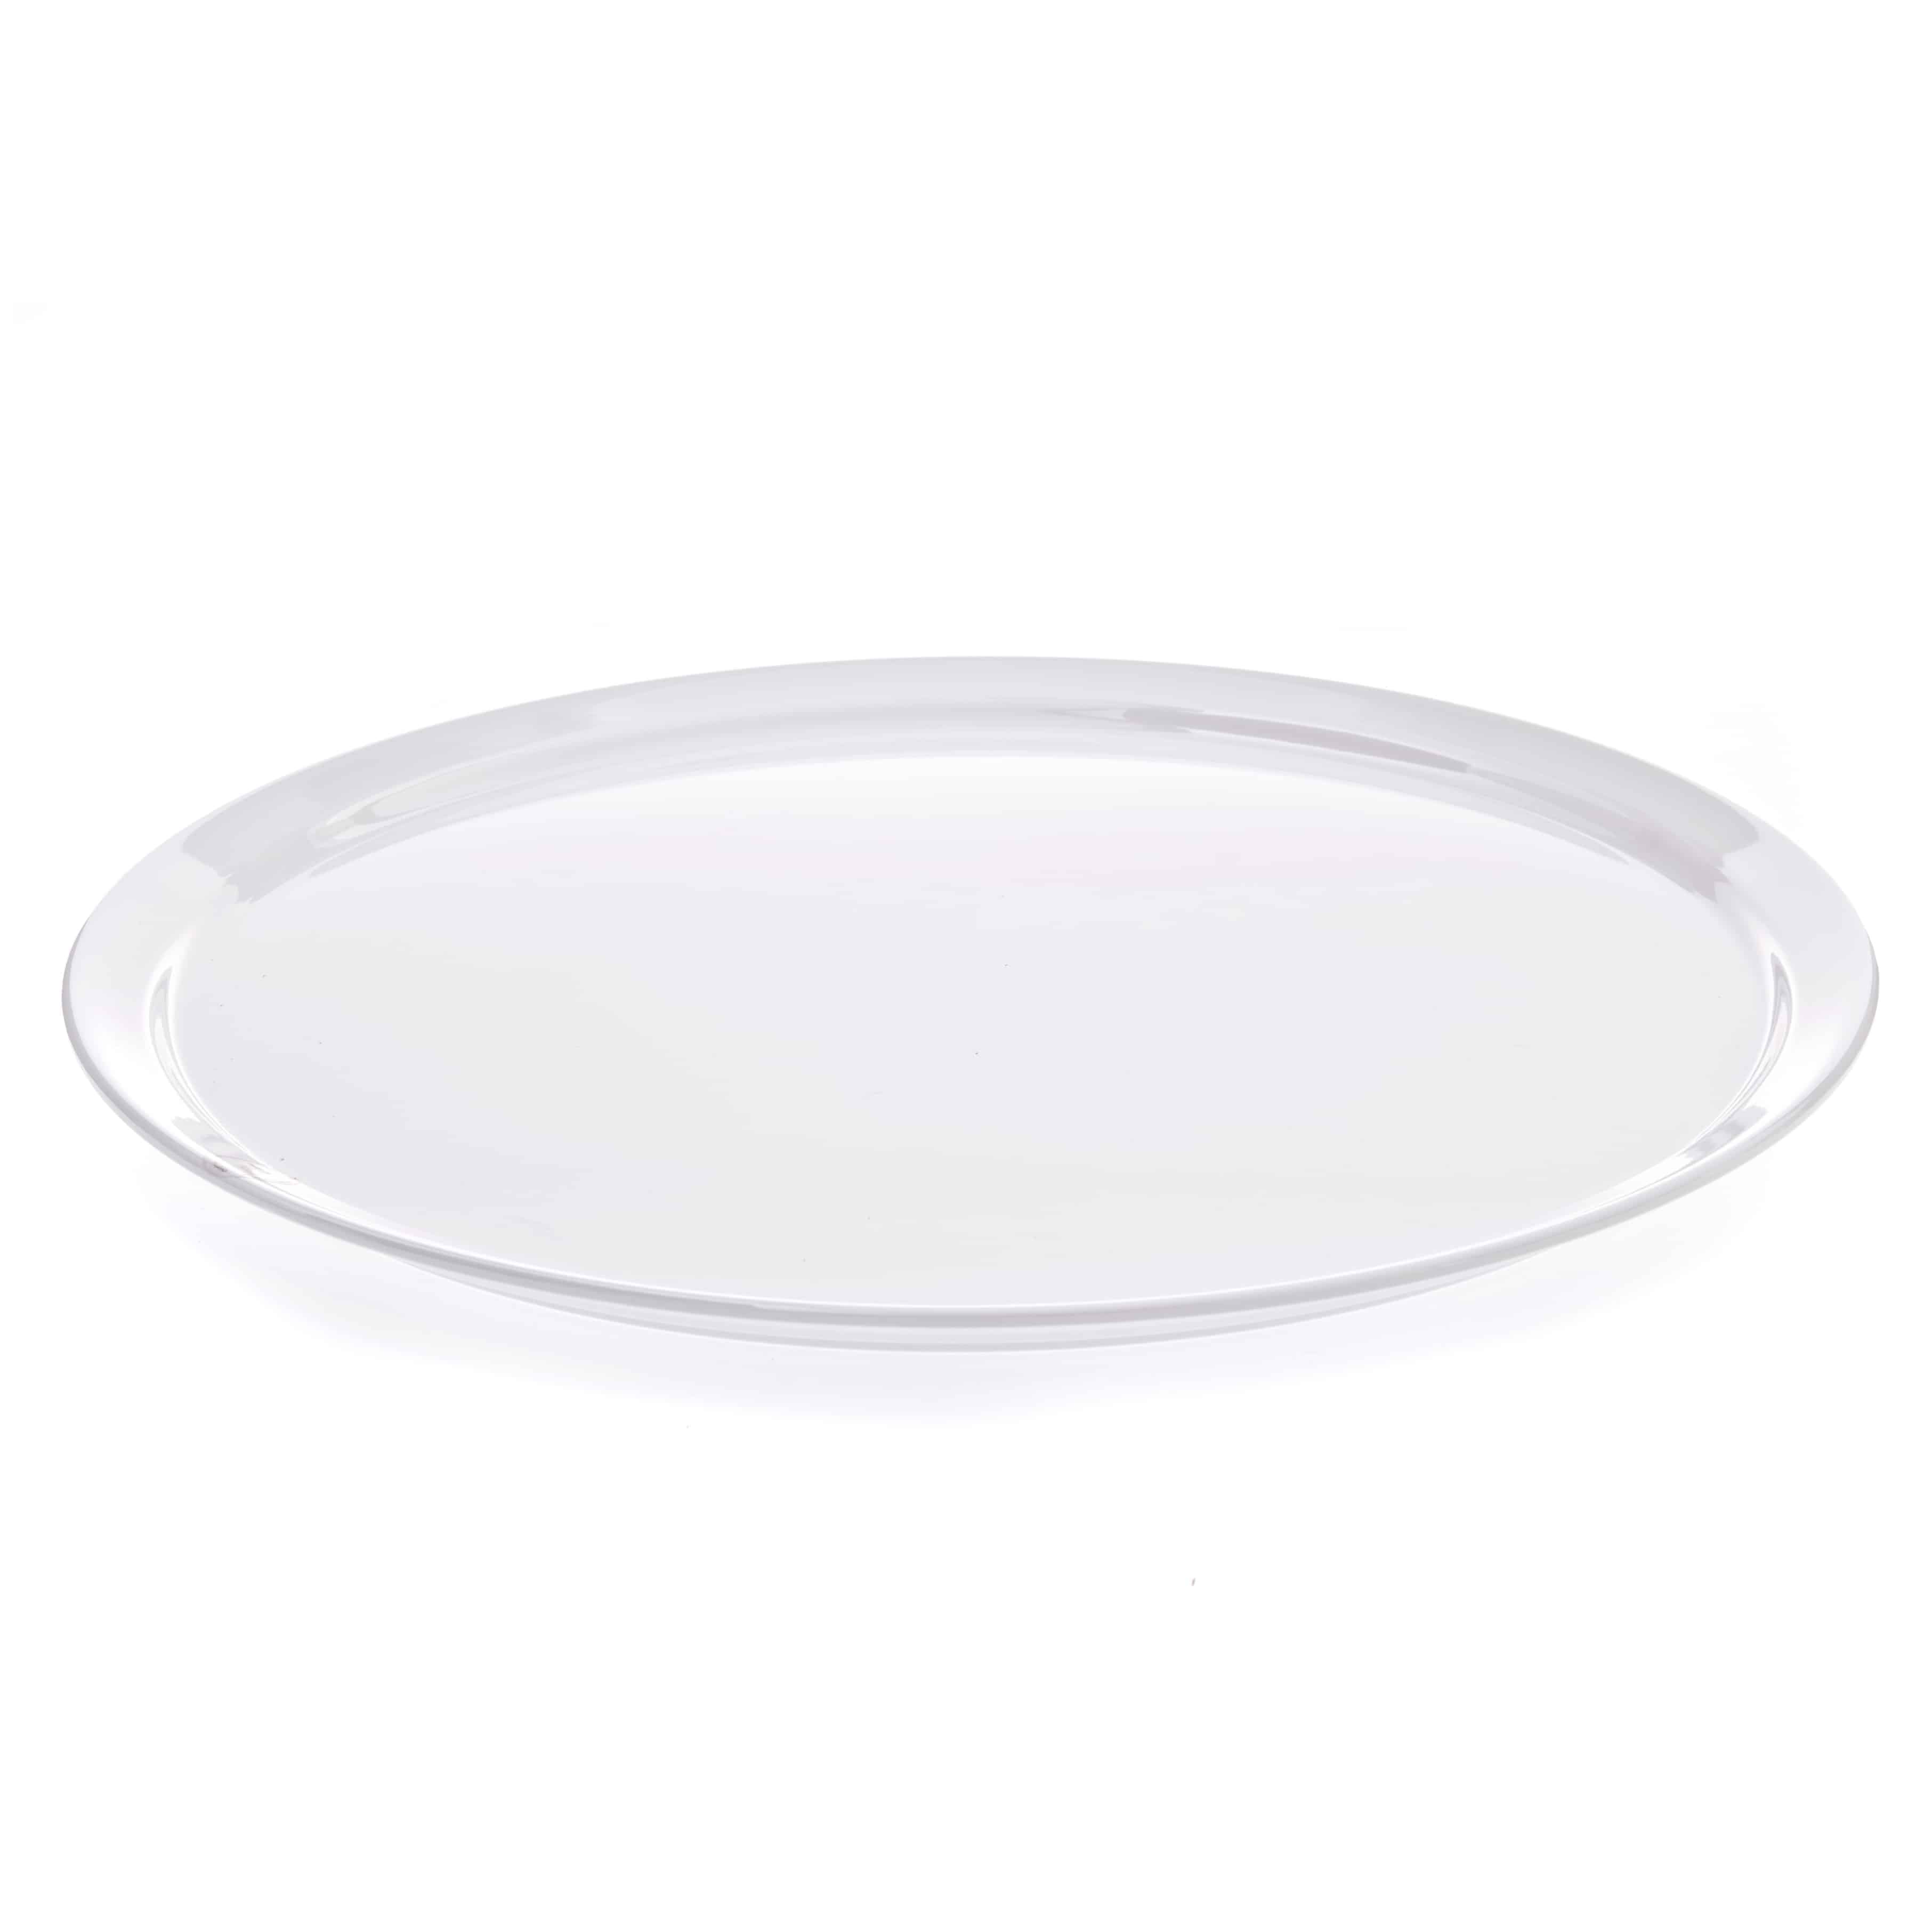 White Extra Extra Large Round Plate 51cm Primeware Ceramics